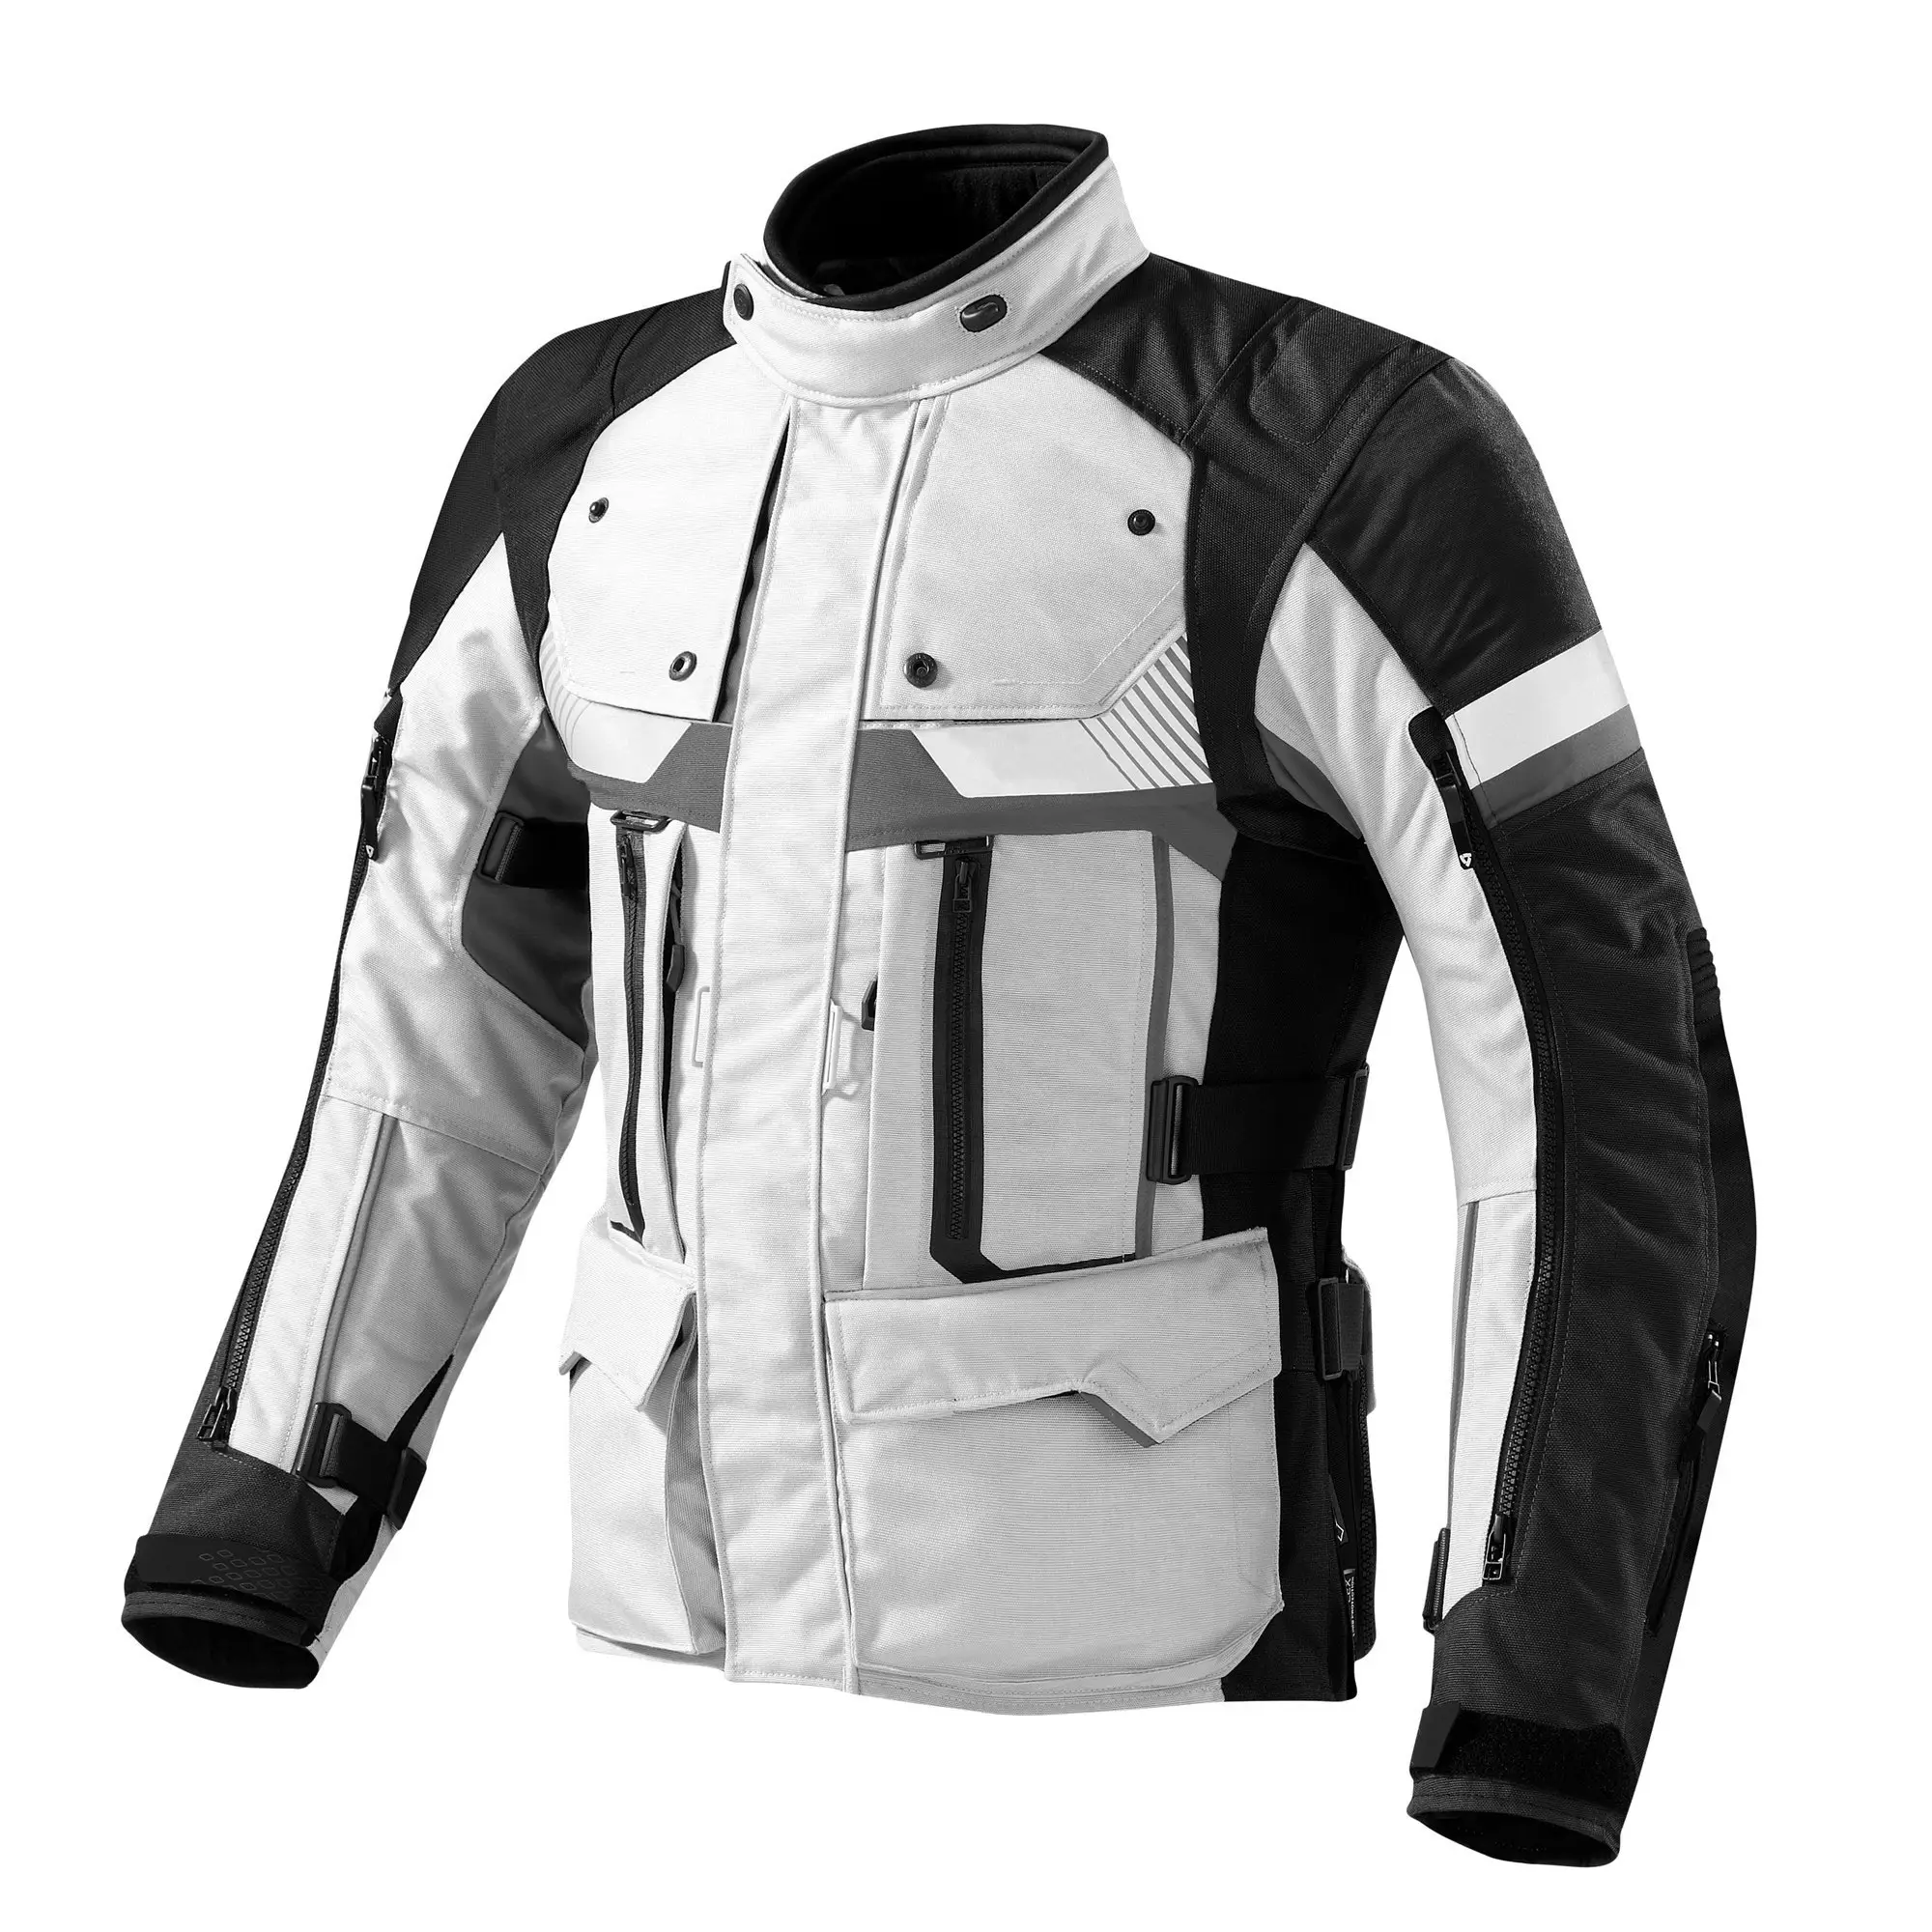 Мотоциклетная текстильная куртка Pro Rider 2021 года для езды на мотоцикле, Мужская Супер скоростная куртка из текстиля для езды на мотоцикле